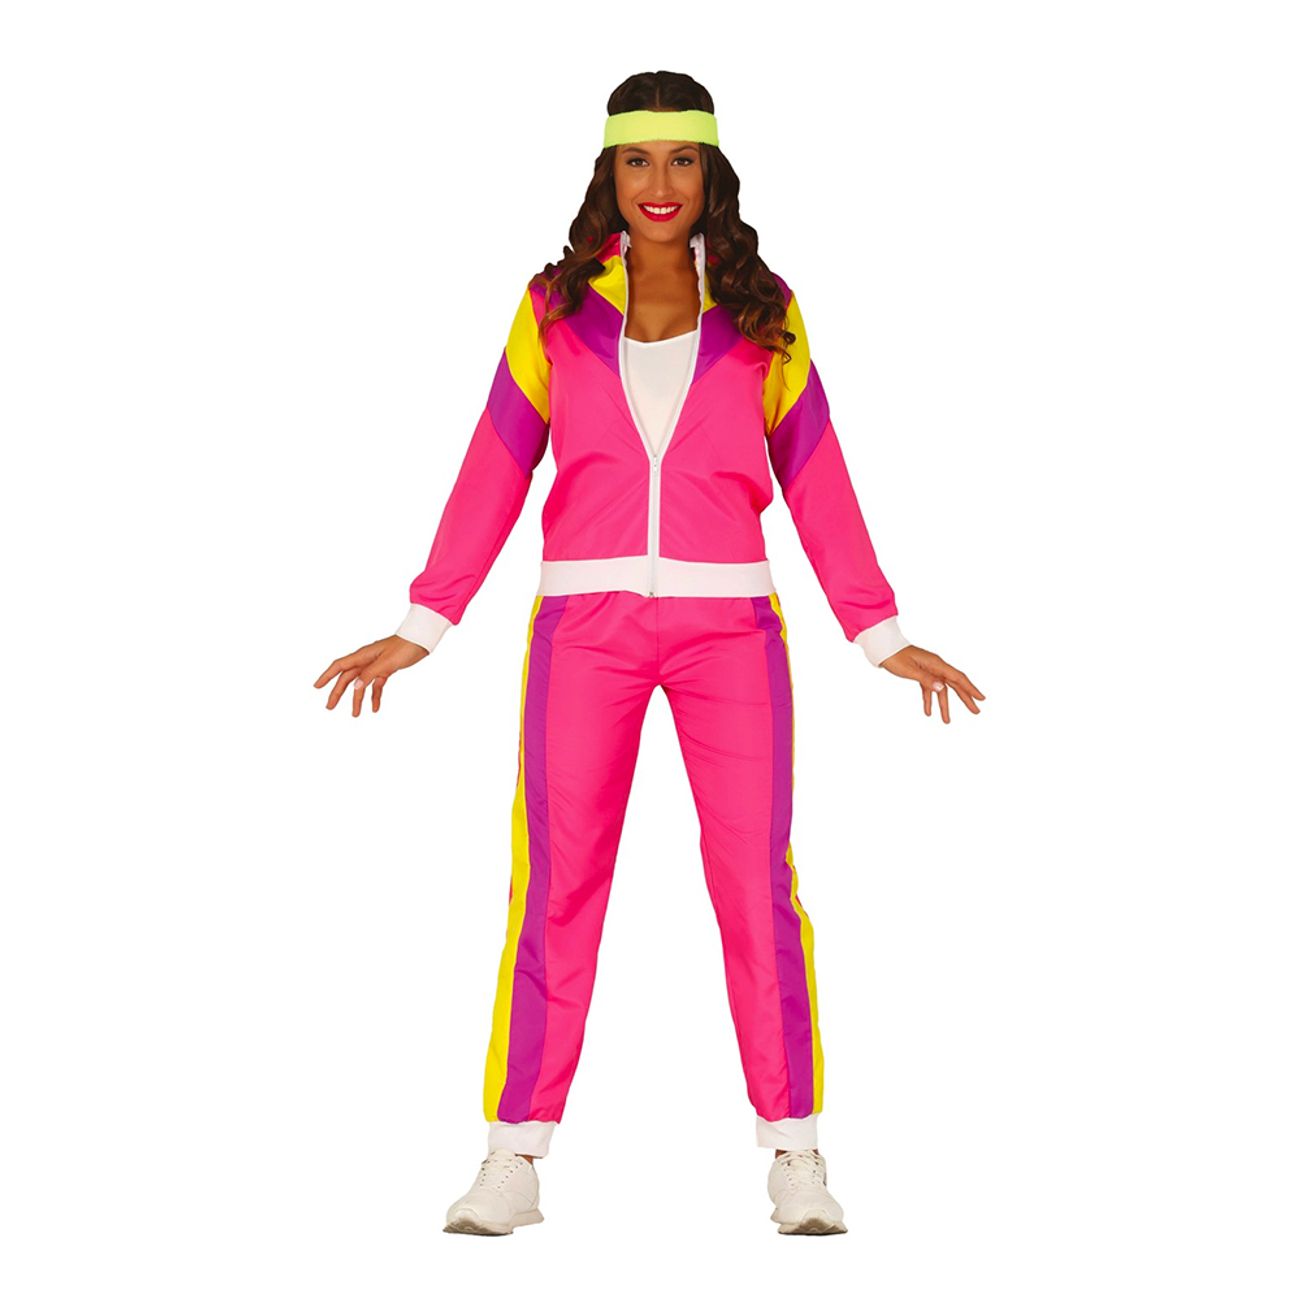 80-tals-kvinnlig-joggare-rosa-maskeraddrakt-49502-3